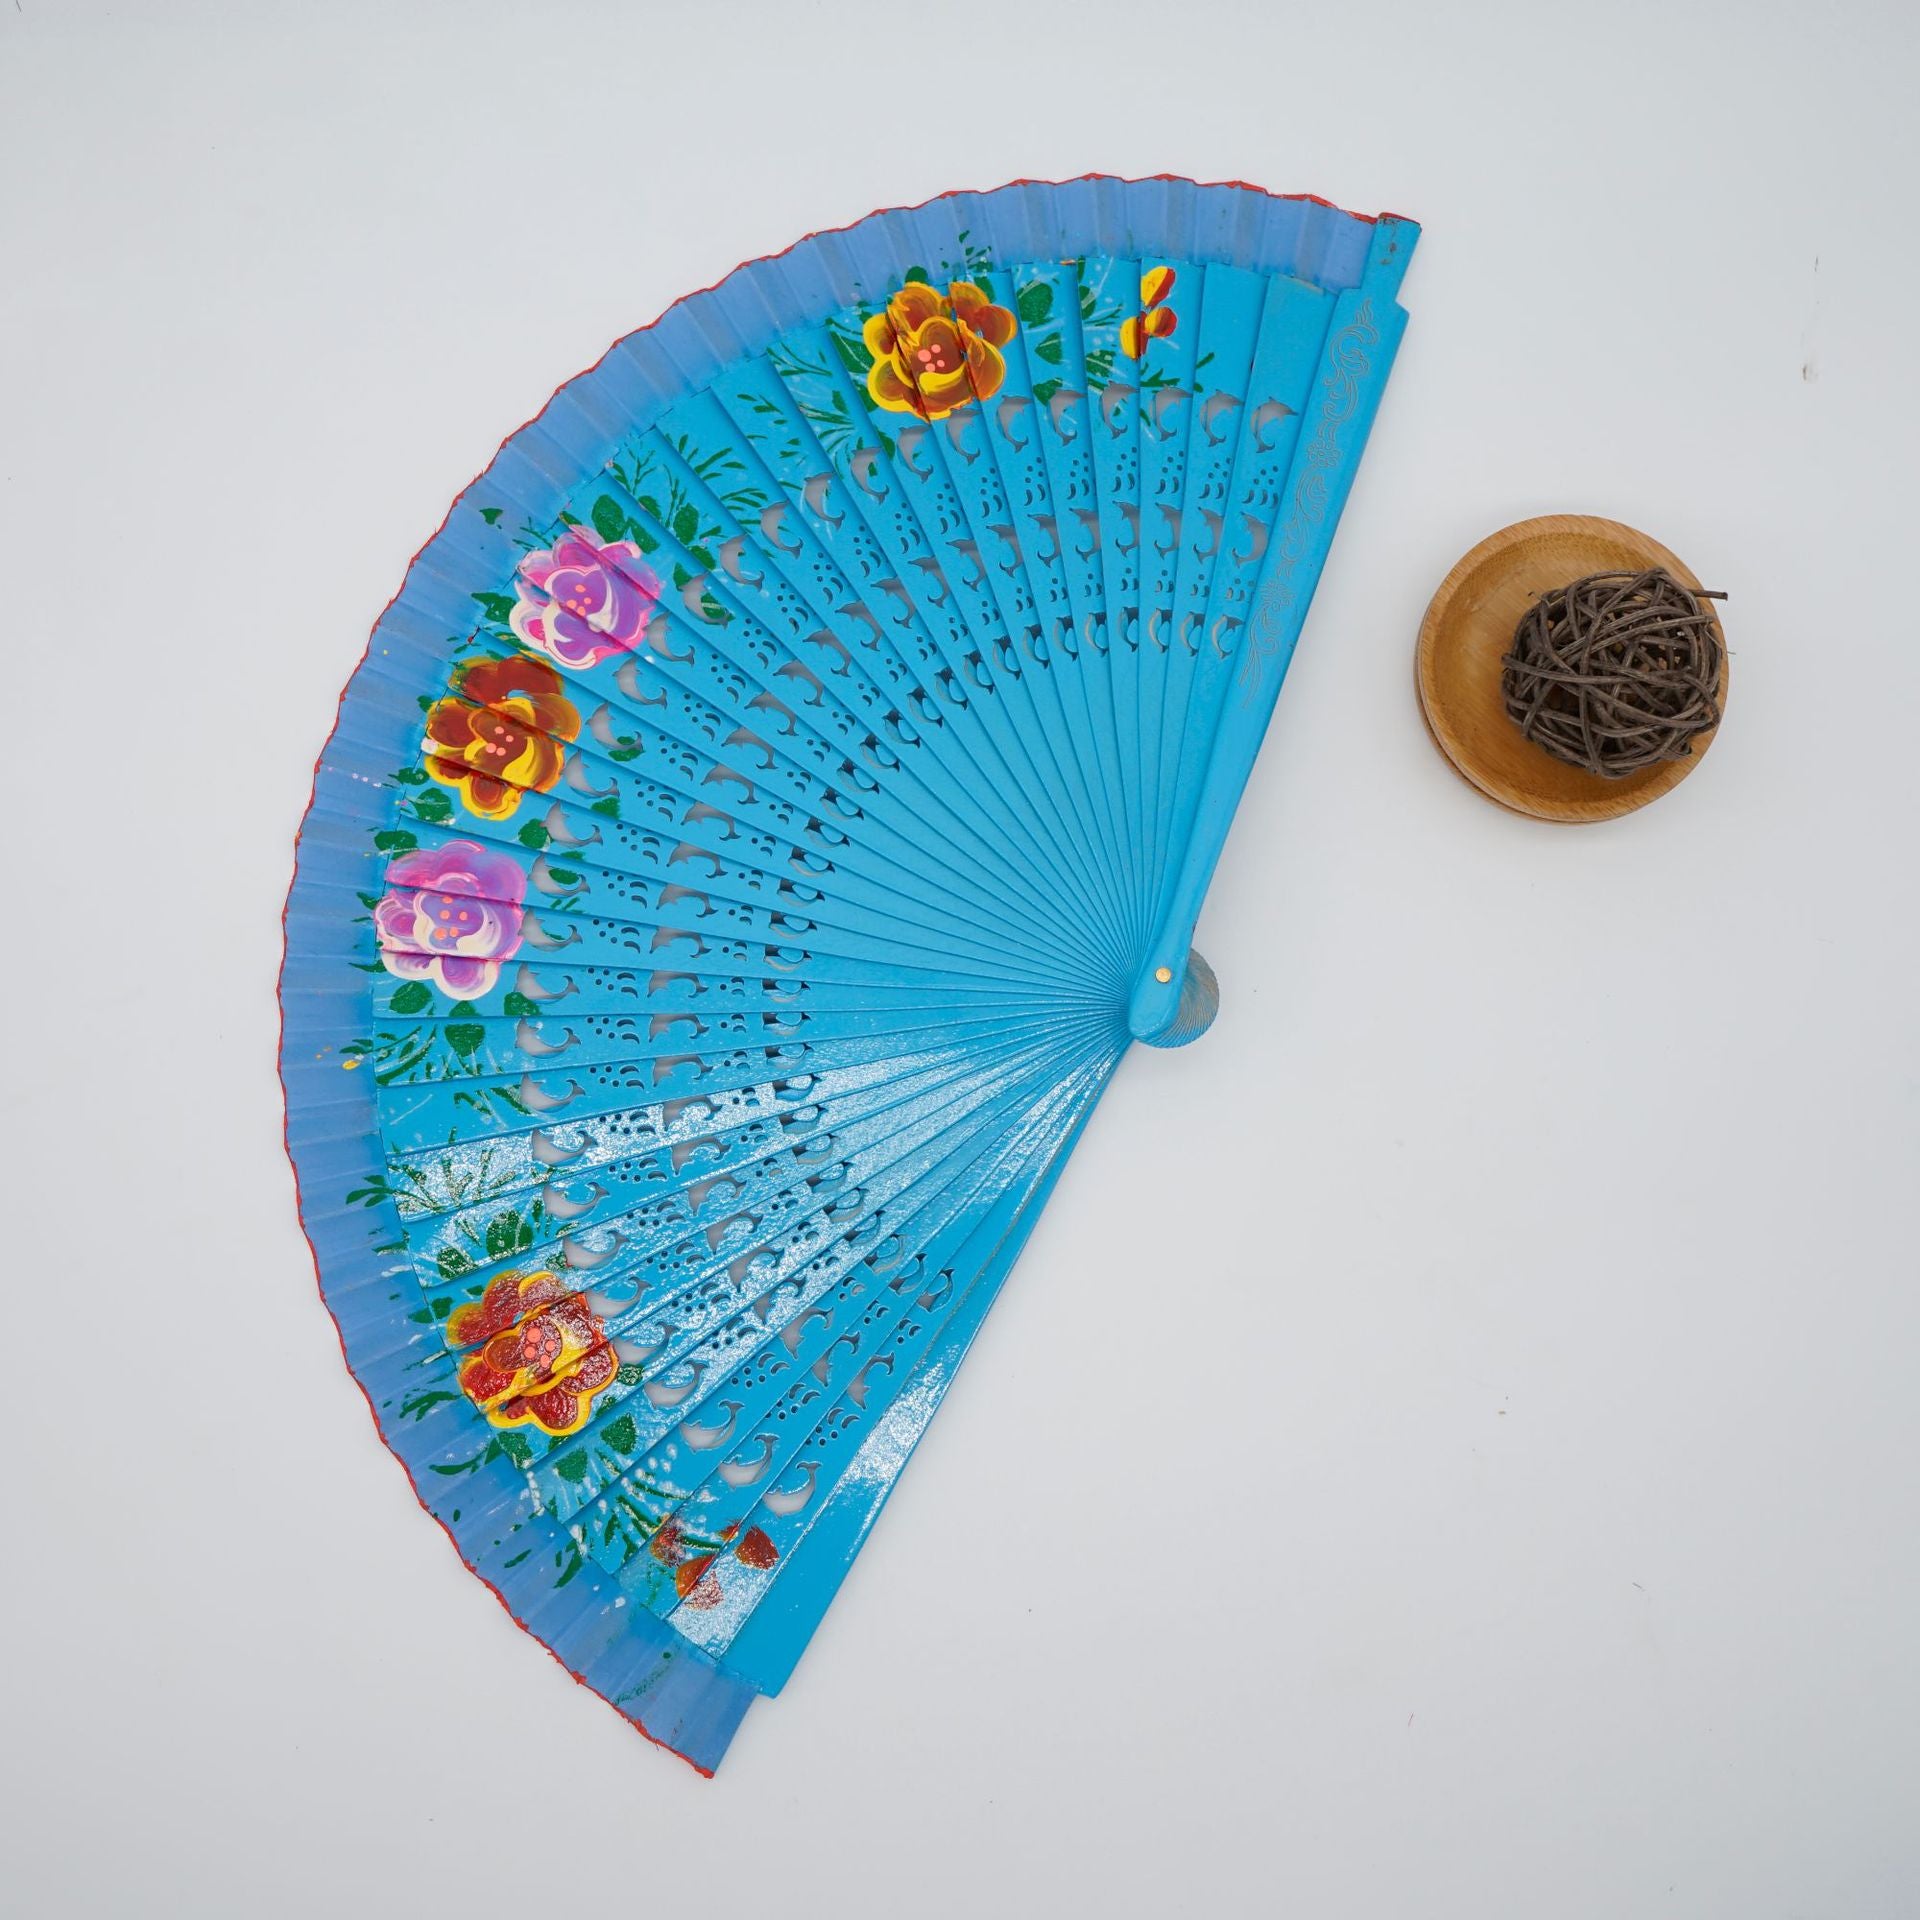 TEEK - Folding Fan Wood Spanish Style Fan FAN theteekdotcom blue  